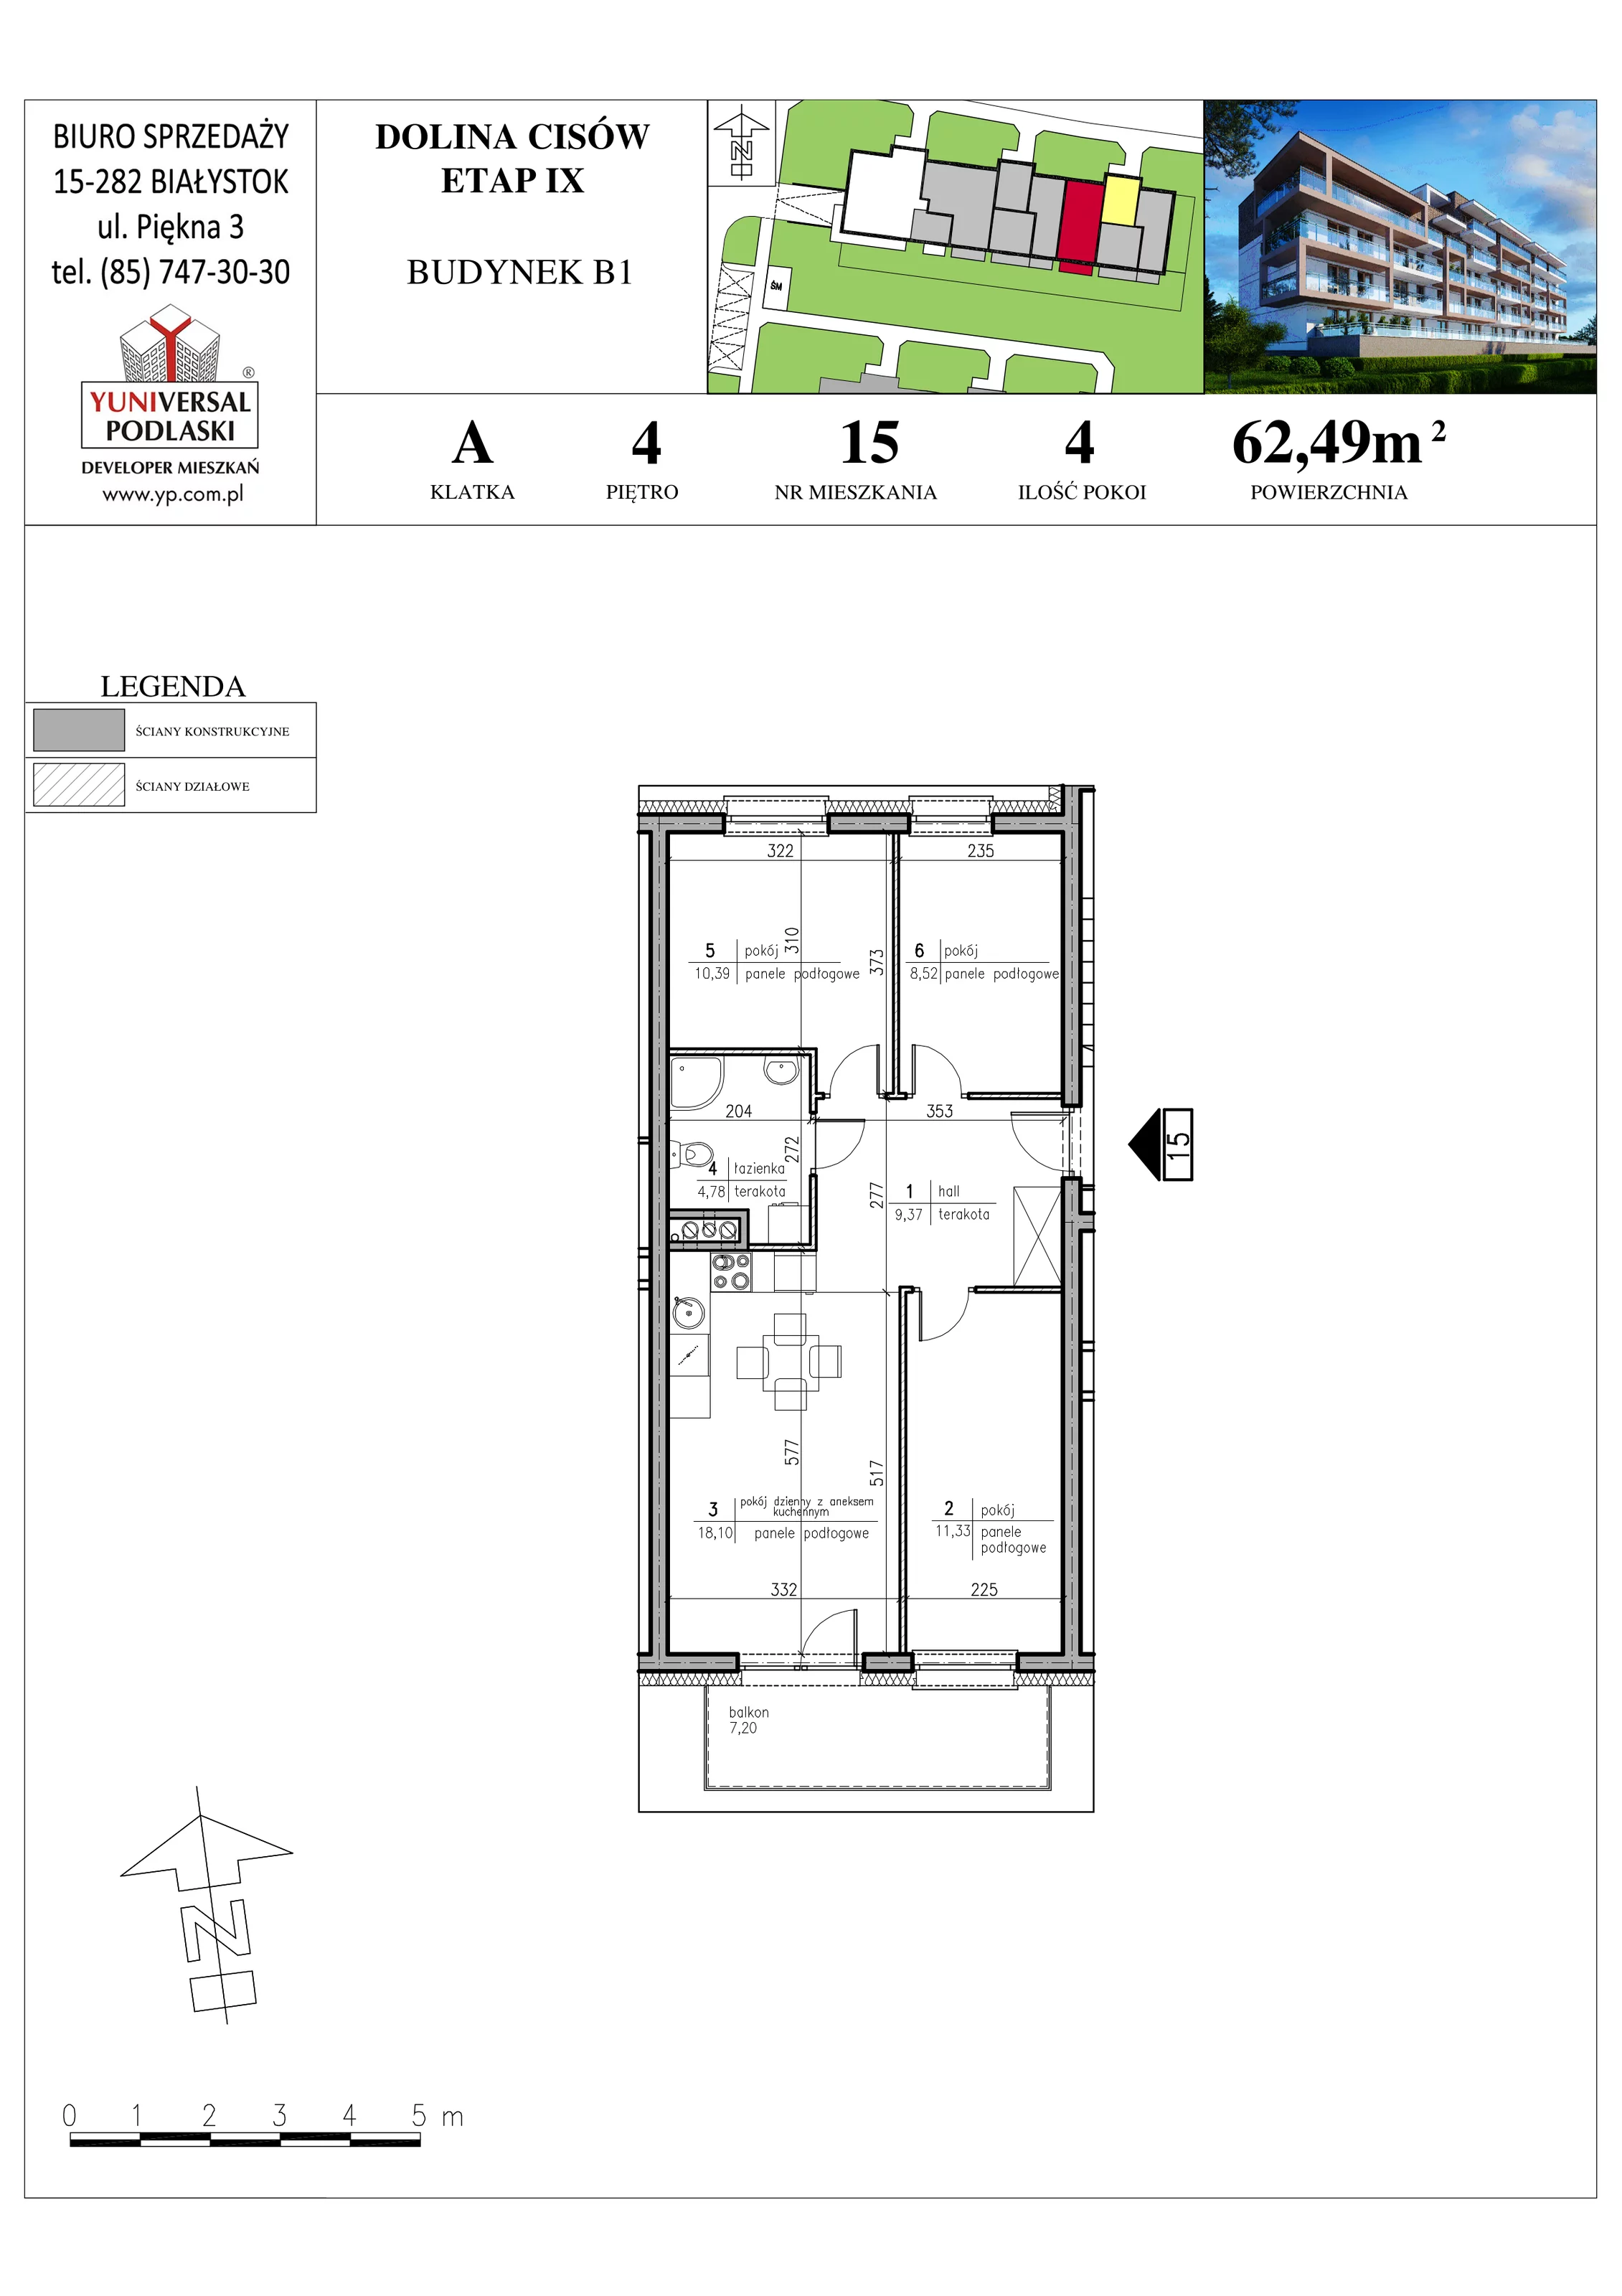 Mieszkanie 62,49 m², piętro 4, oferta nr B1-15, Osiedle Dolina Cisów - Etap IX, Wasilków, ul. Nadawki